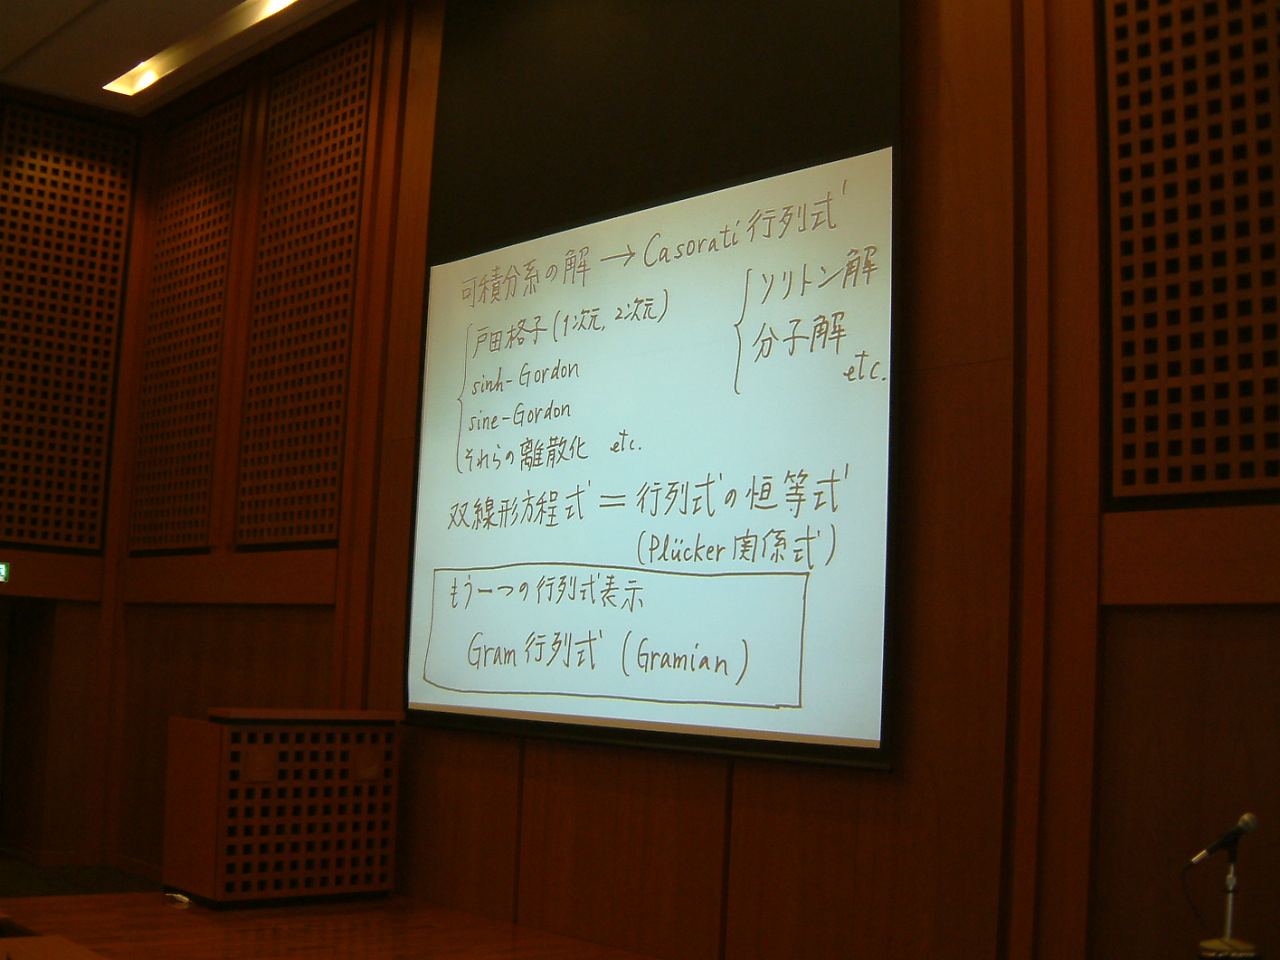 太田さんの講演資料